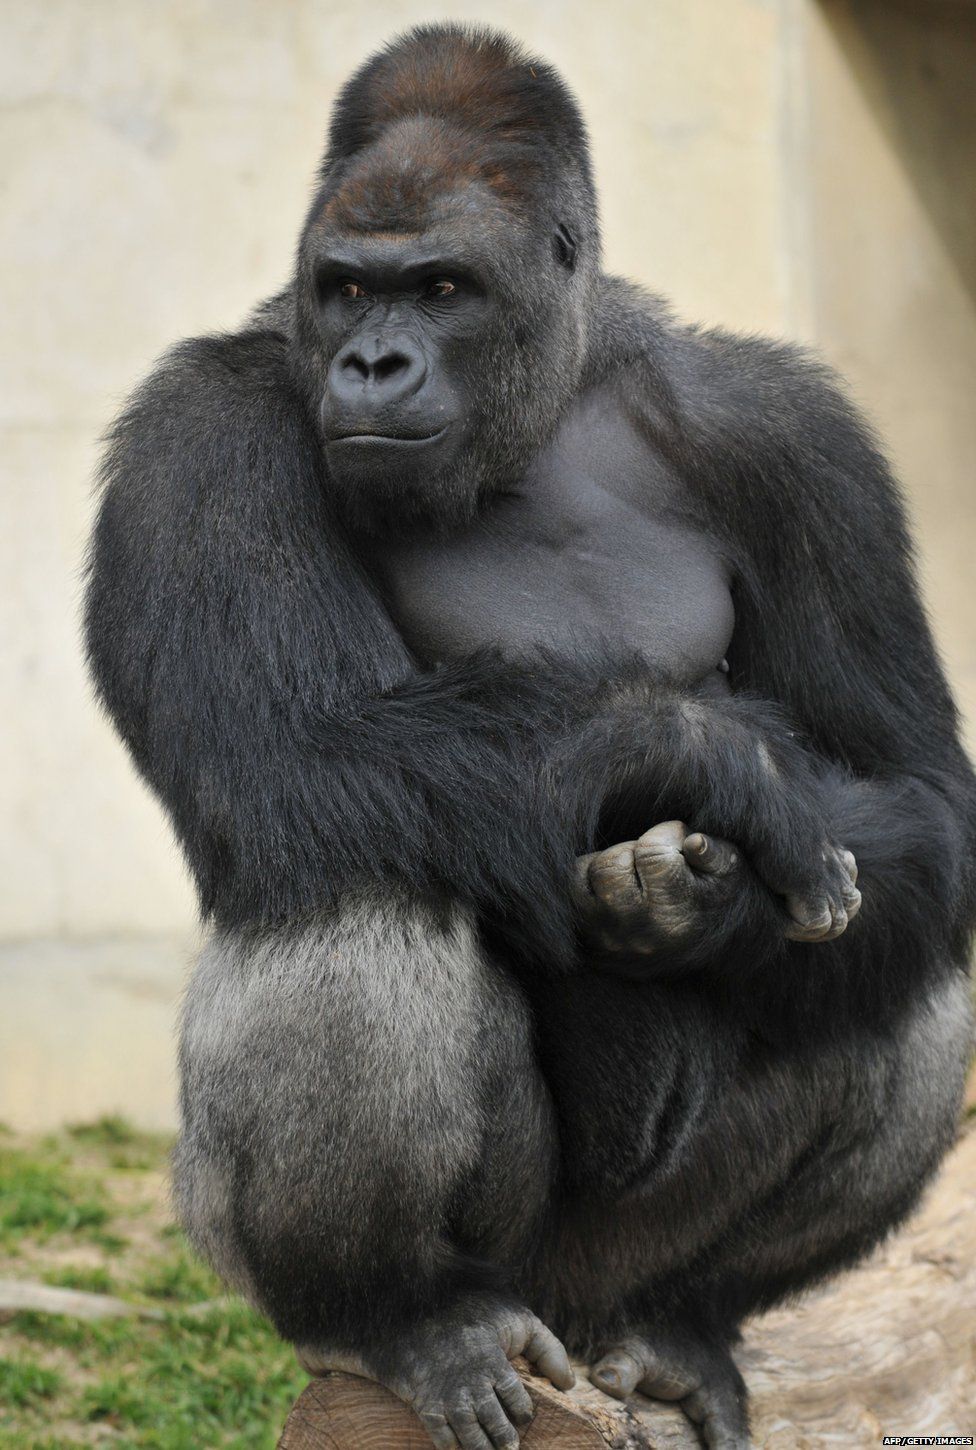 gigantic gorilla penis